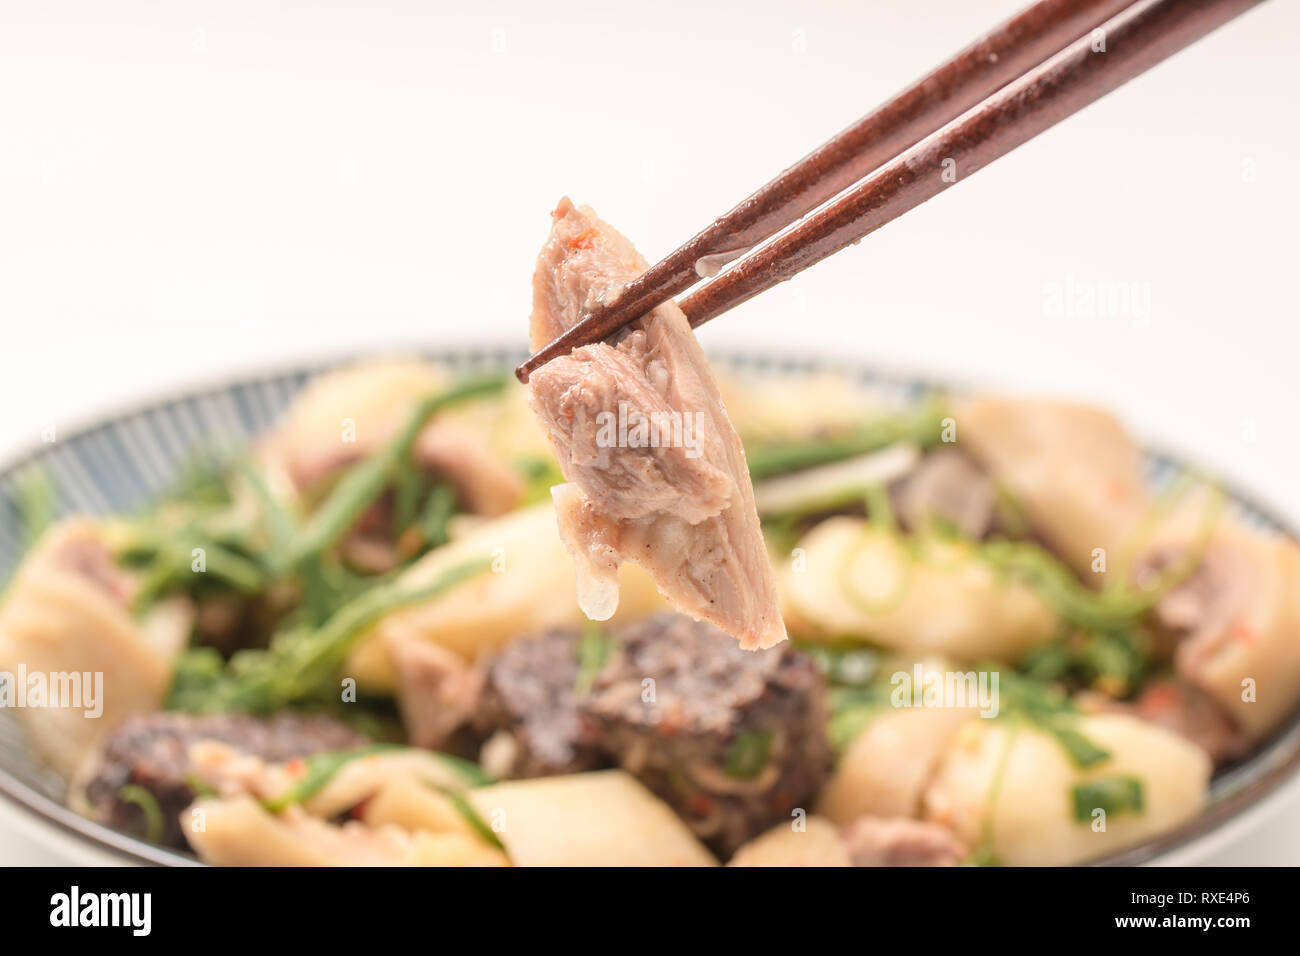 Alimentaire, appelé taïwanais poulet salé, qui est une sorte d'aliments traditionnels que la viande ou des volailles à l'étuvée avec salé et tendu avant de servir. Banque D'Images